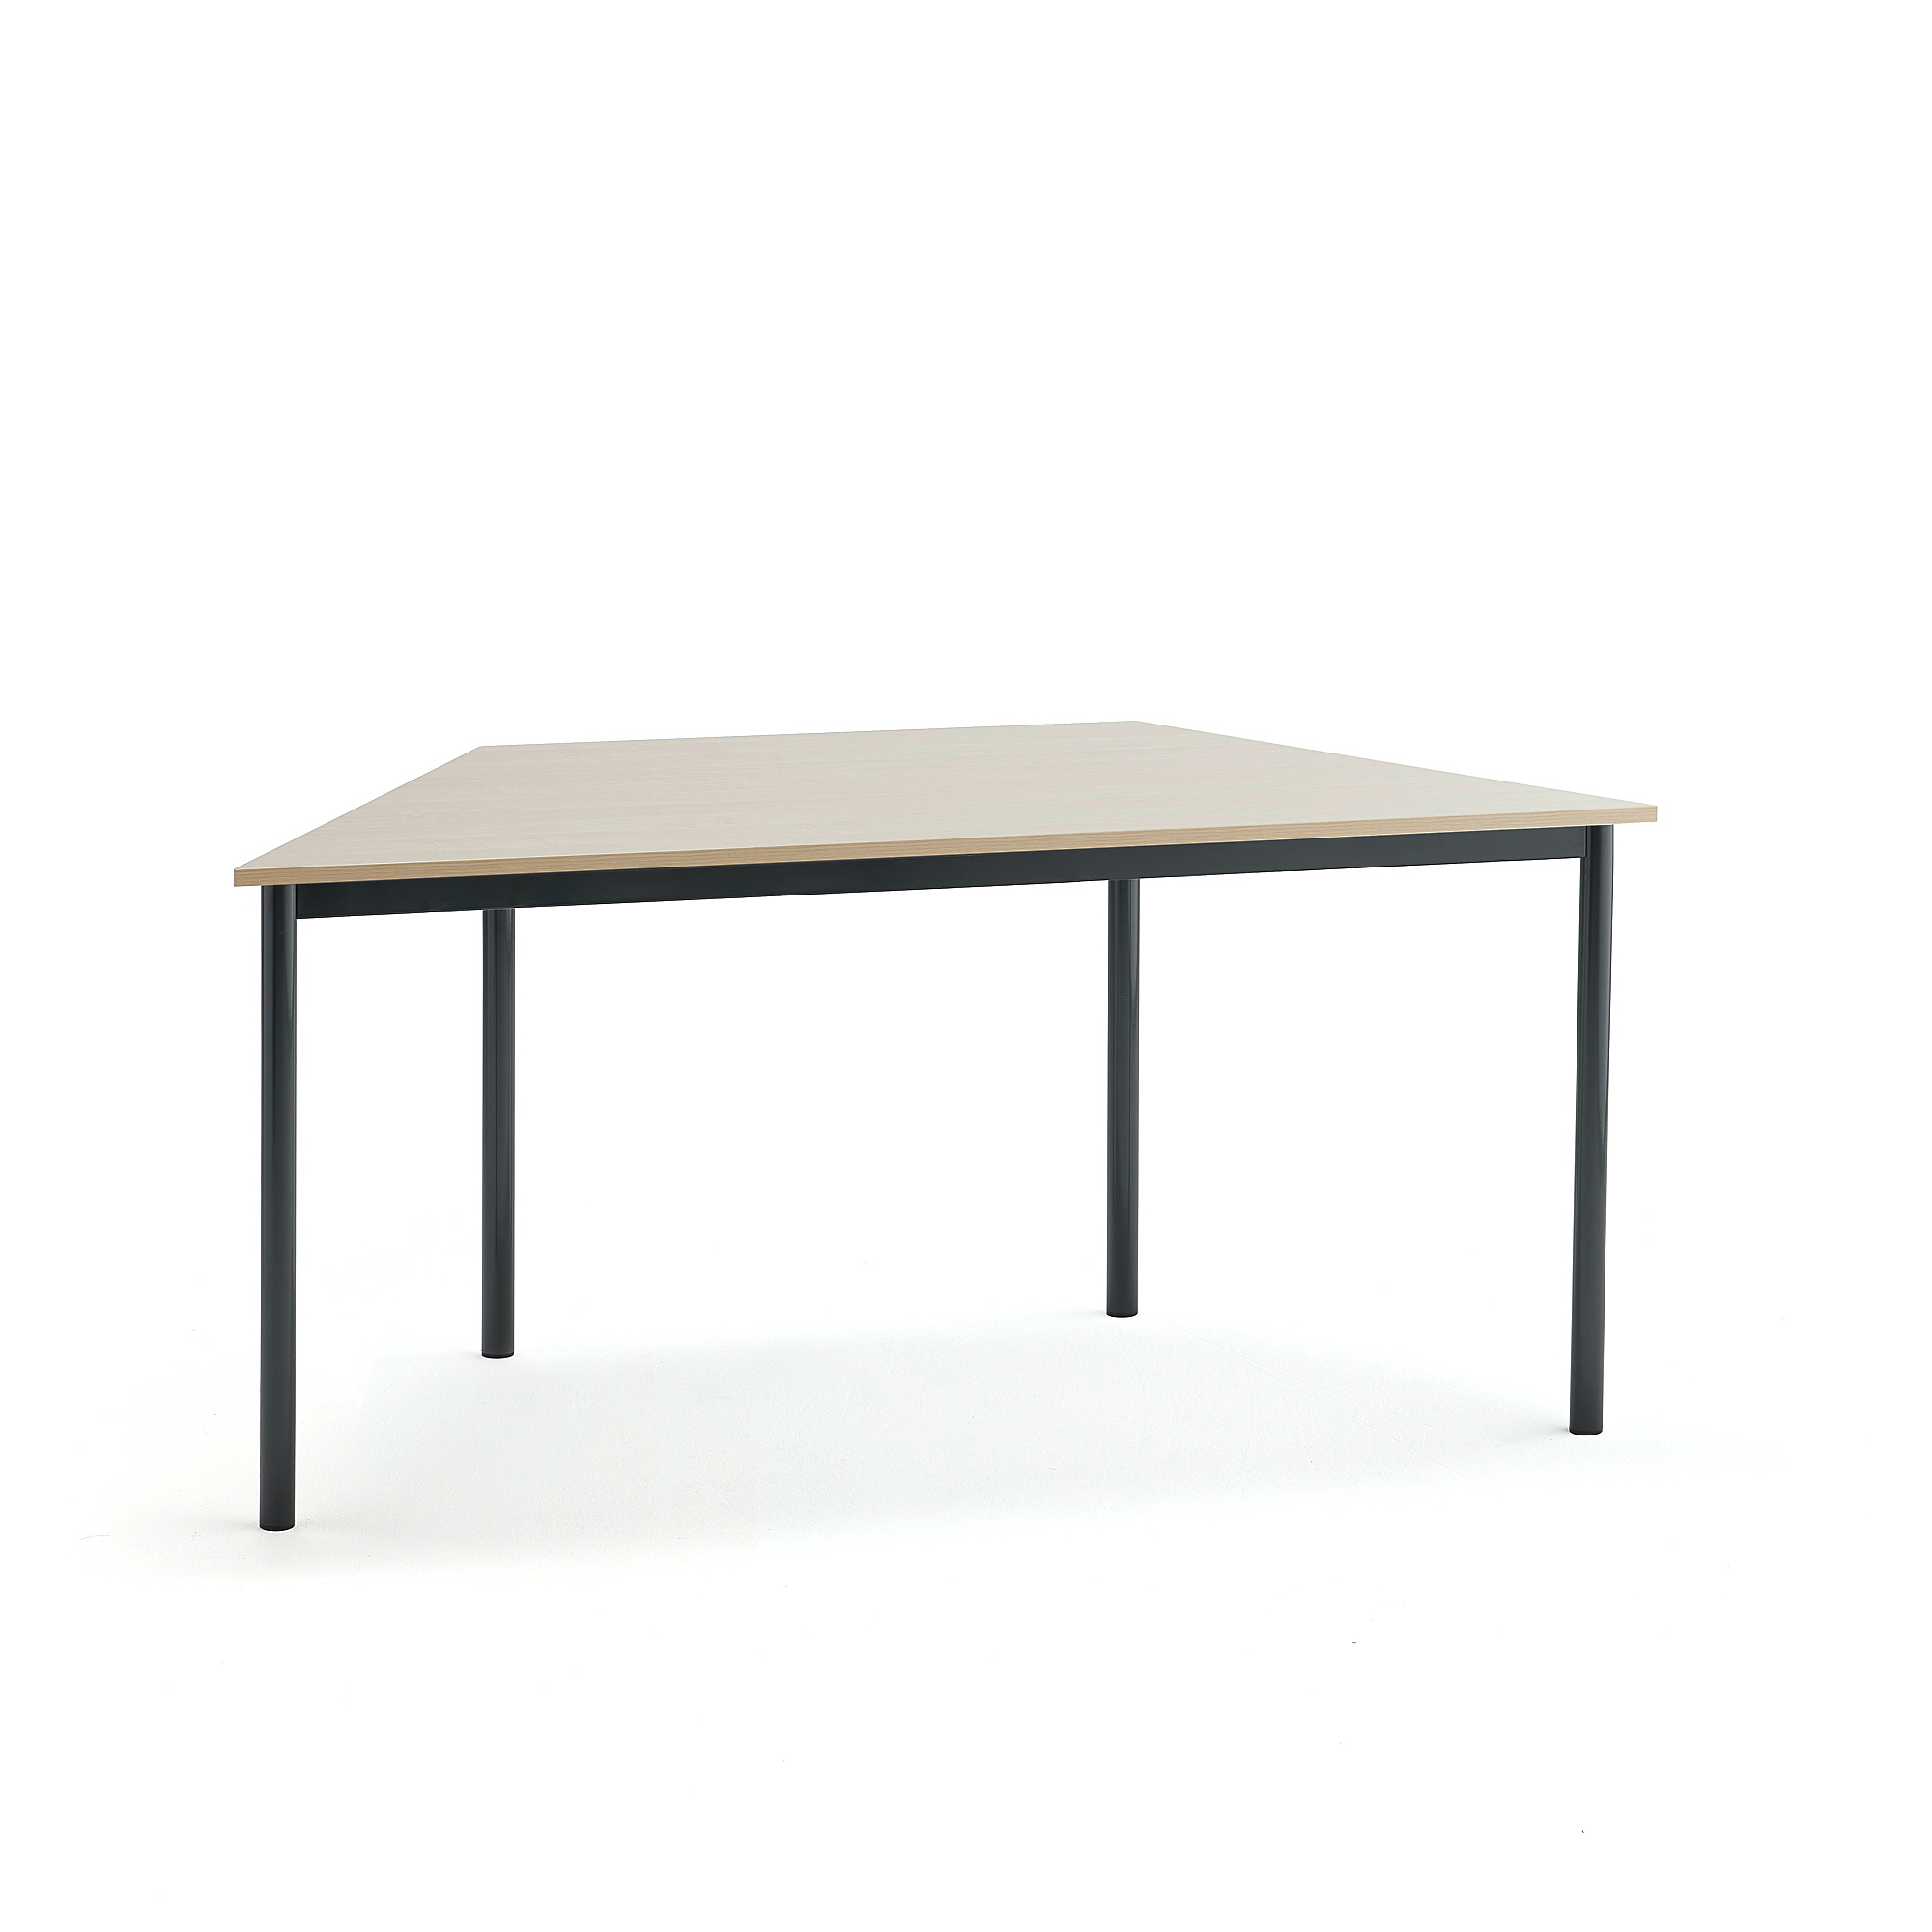 Stůl BORÅS TRAPETS, 1600x800x720 mm, antracitově šedé nohy, HPL deska, bříza